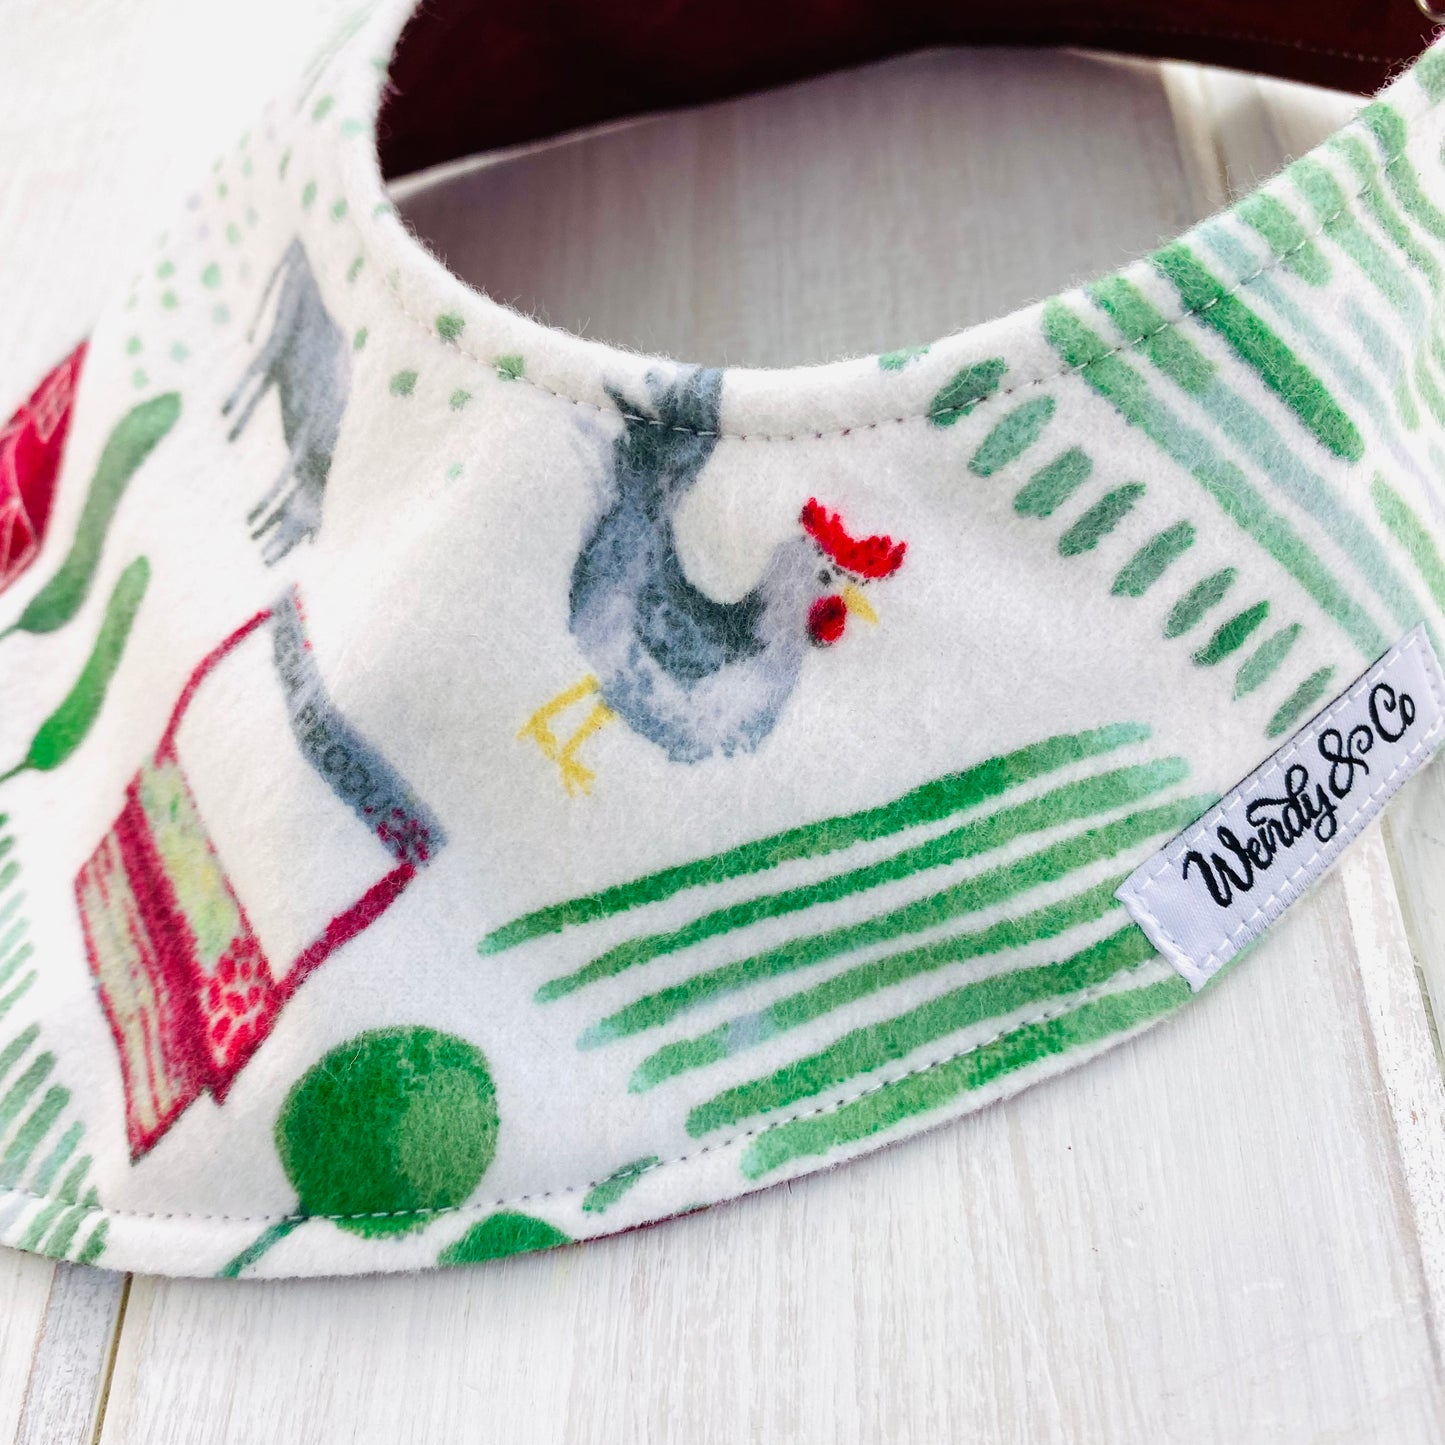 Chicken, cow and farm scene in watercolor fabric baby bib.